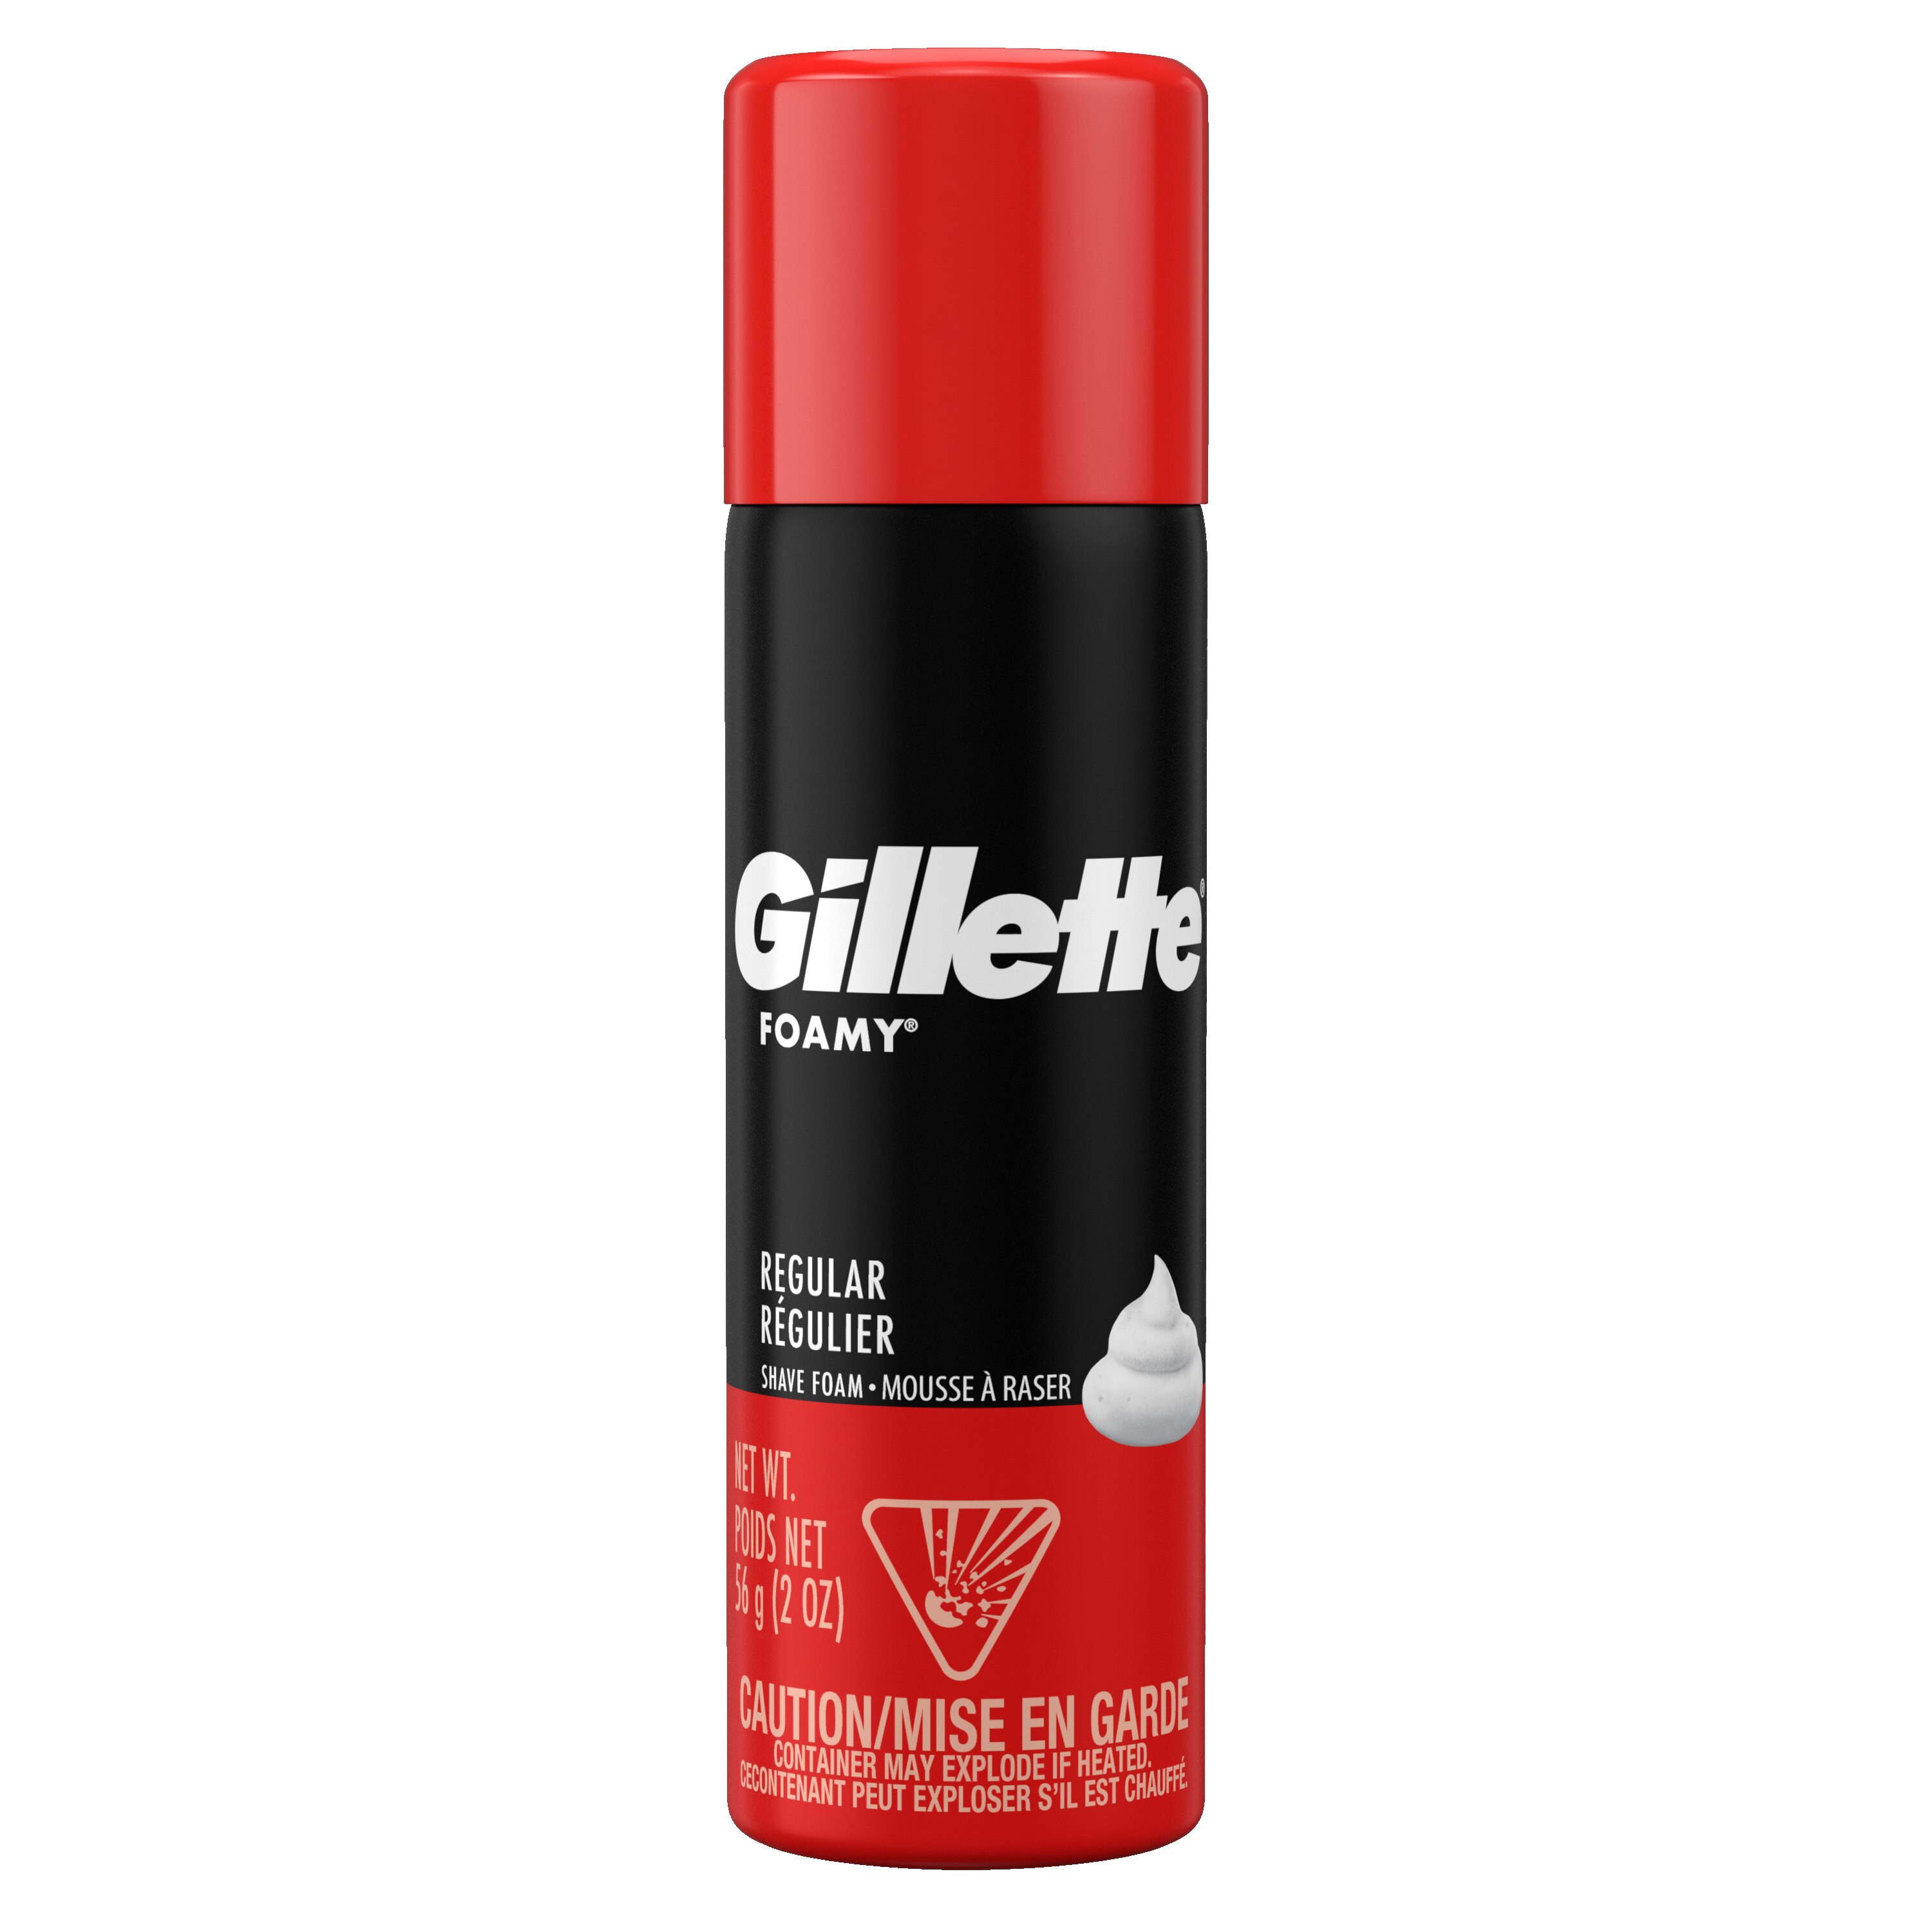 Indringing Bijna Stroomopwaarts Gillette Foamy Regular Shaving Foam, 2 oz | Pick Up In Store TODAY at CVS